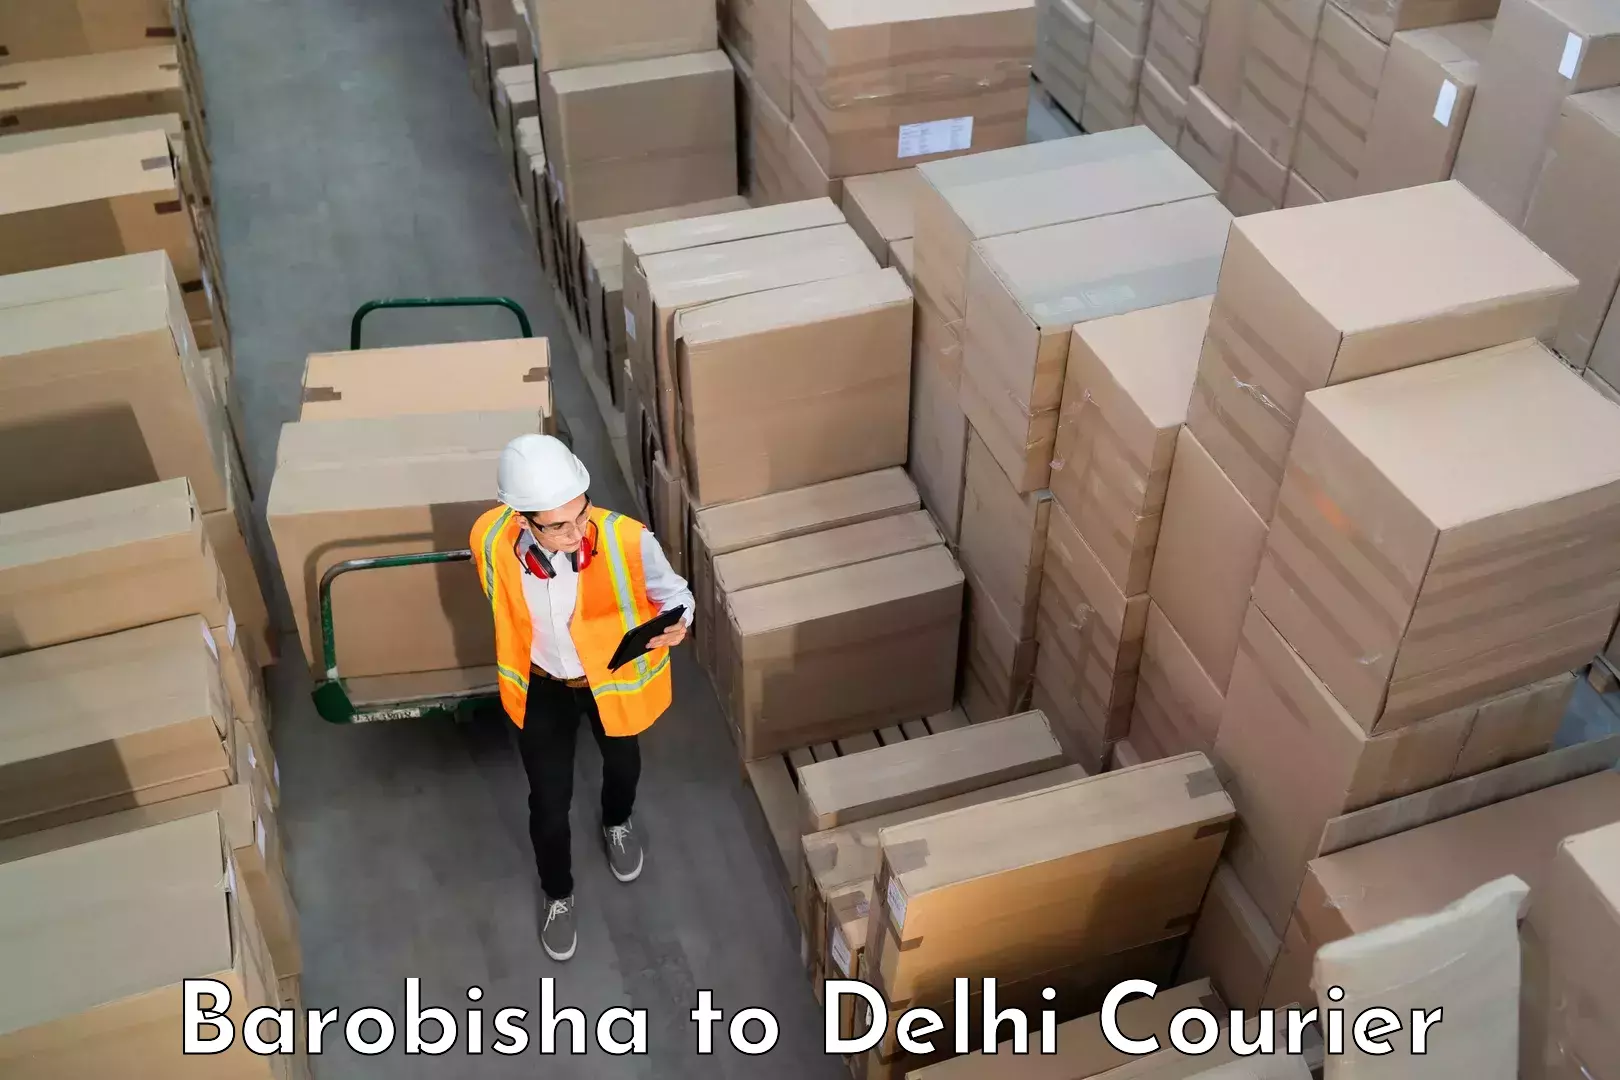 Reliable luggage courier Barobisha to Jamia Millia Islamia New Delhi